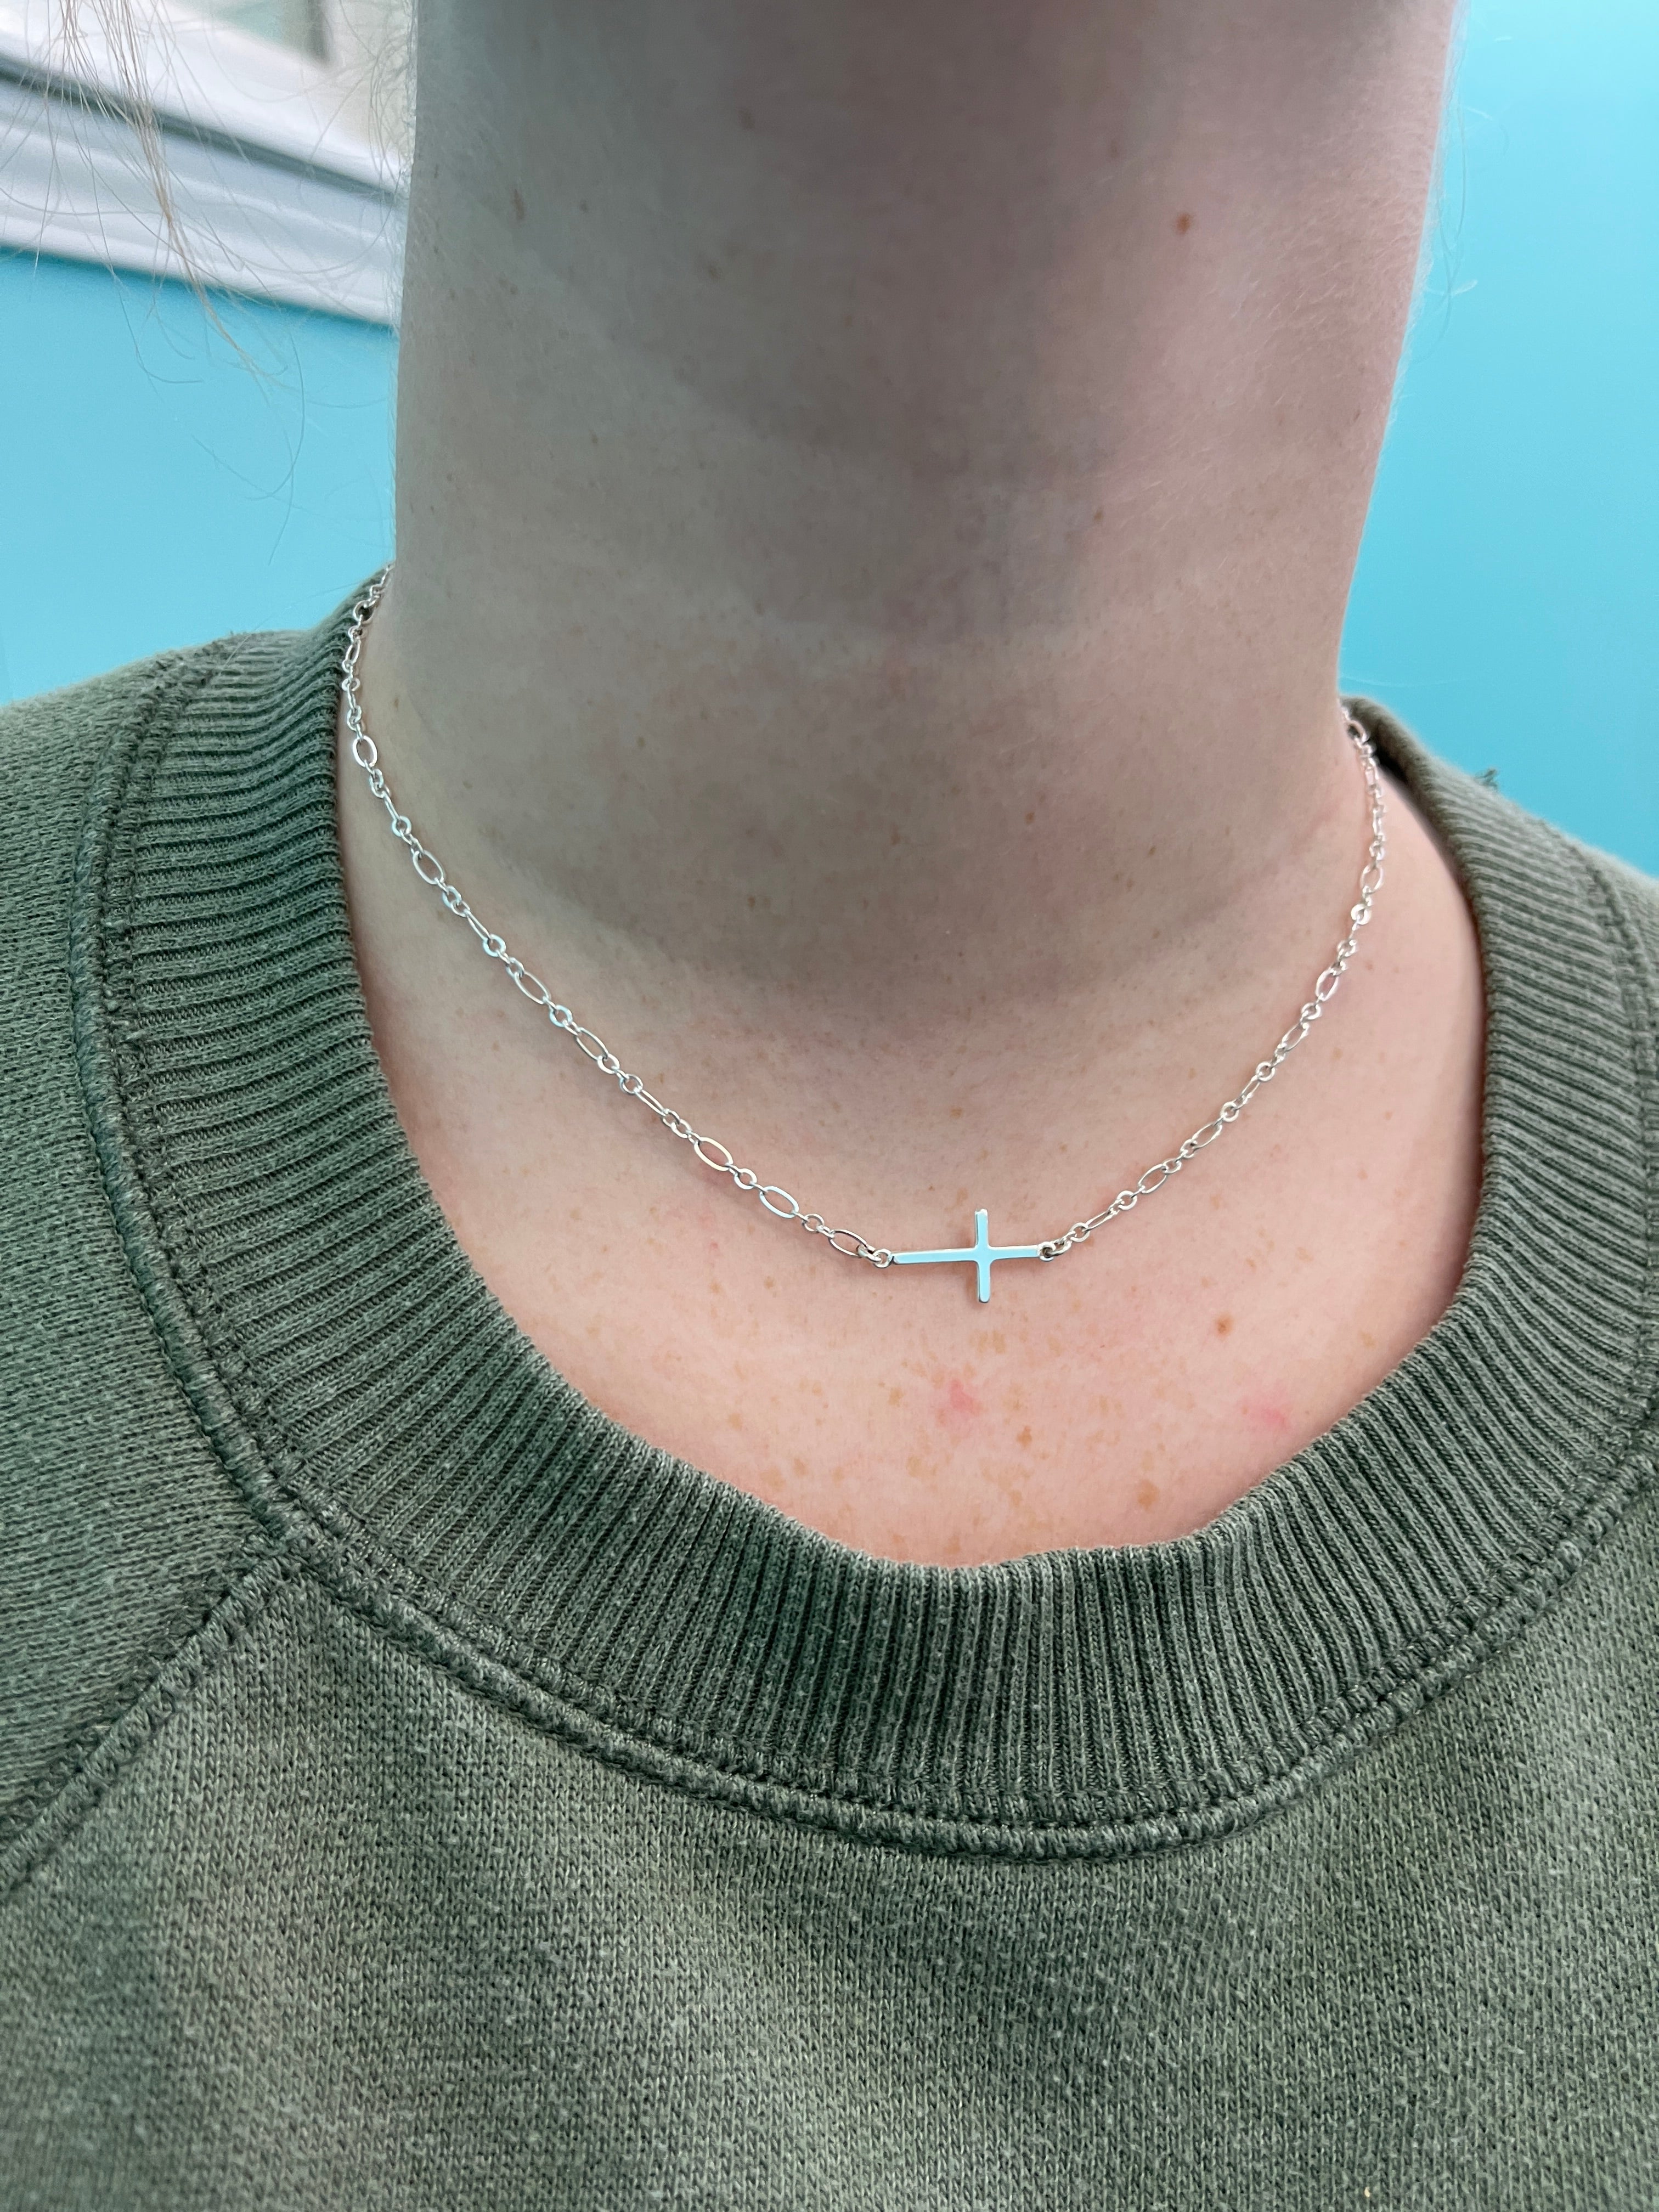 Permanent Jewelry - Necklaces – Rosemary's Emporium